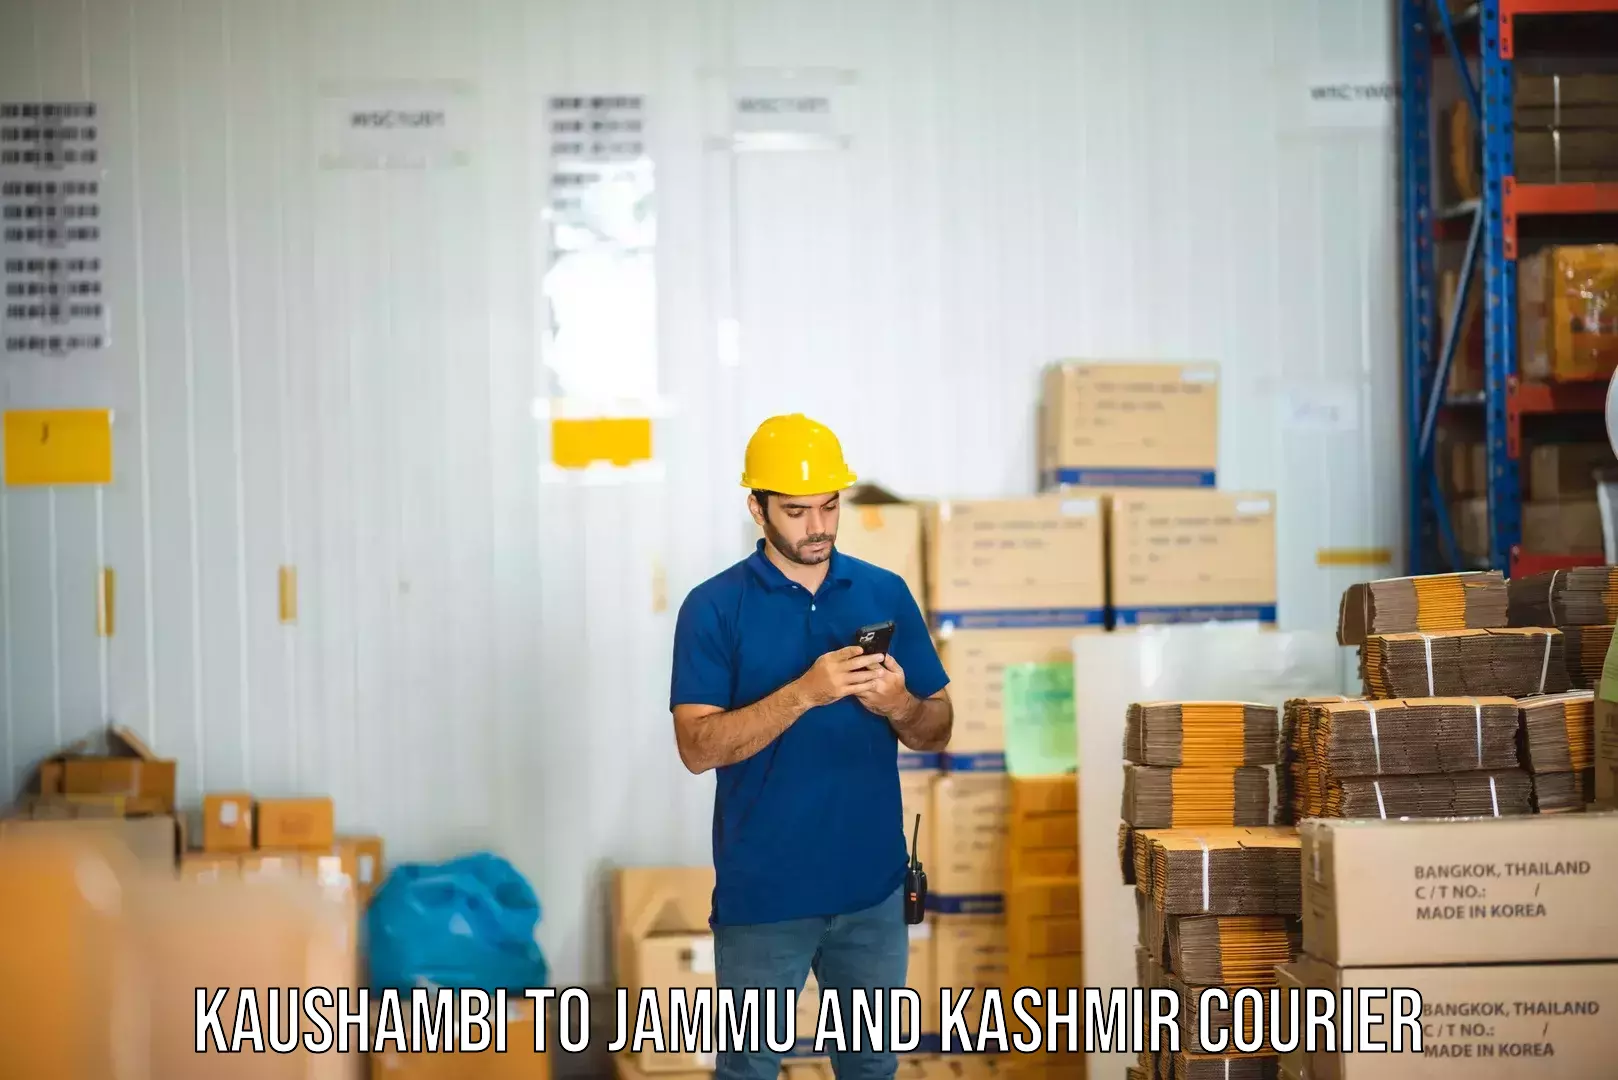 Specialized shipment handling Kaushambi to Bandipur